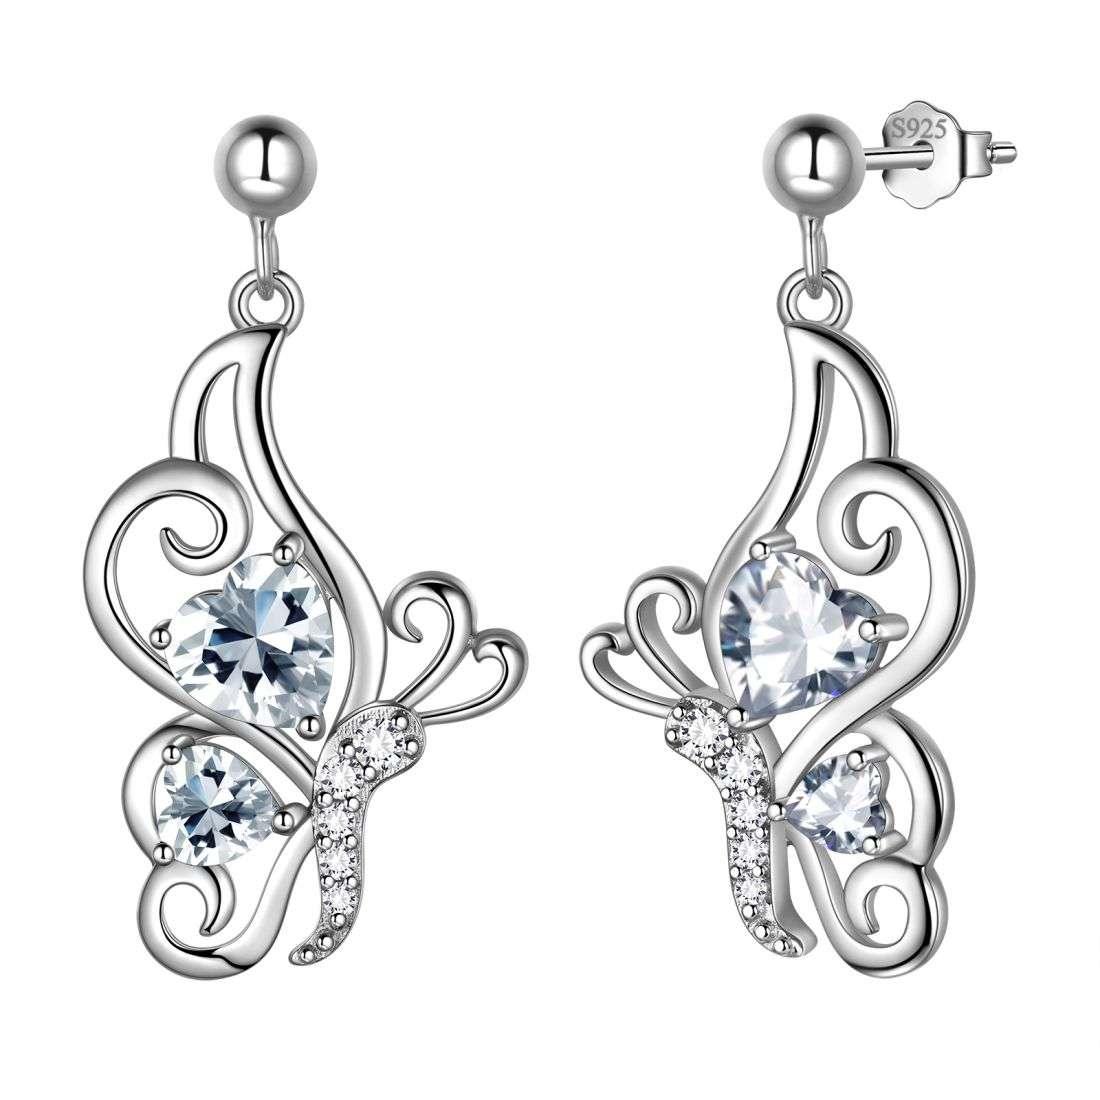 Butterfly Birthstone April Diamond Earrings Sterling Silver - Earrings - Aurora Tears